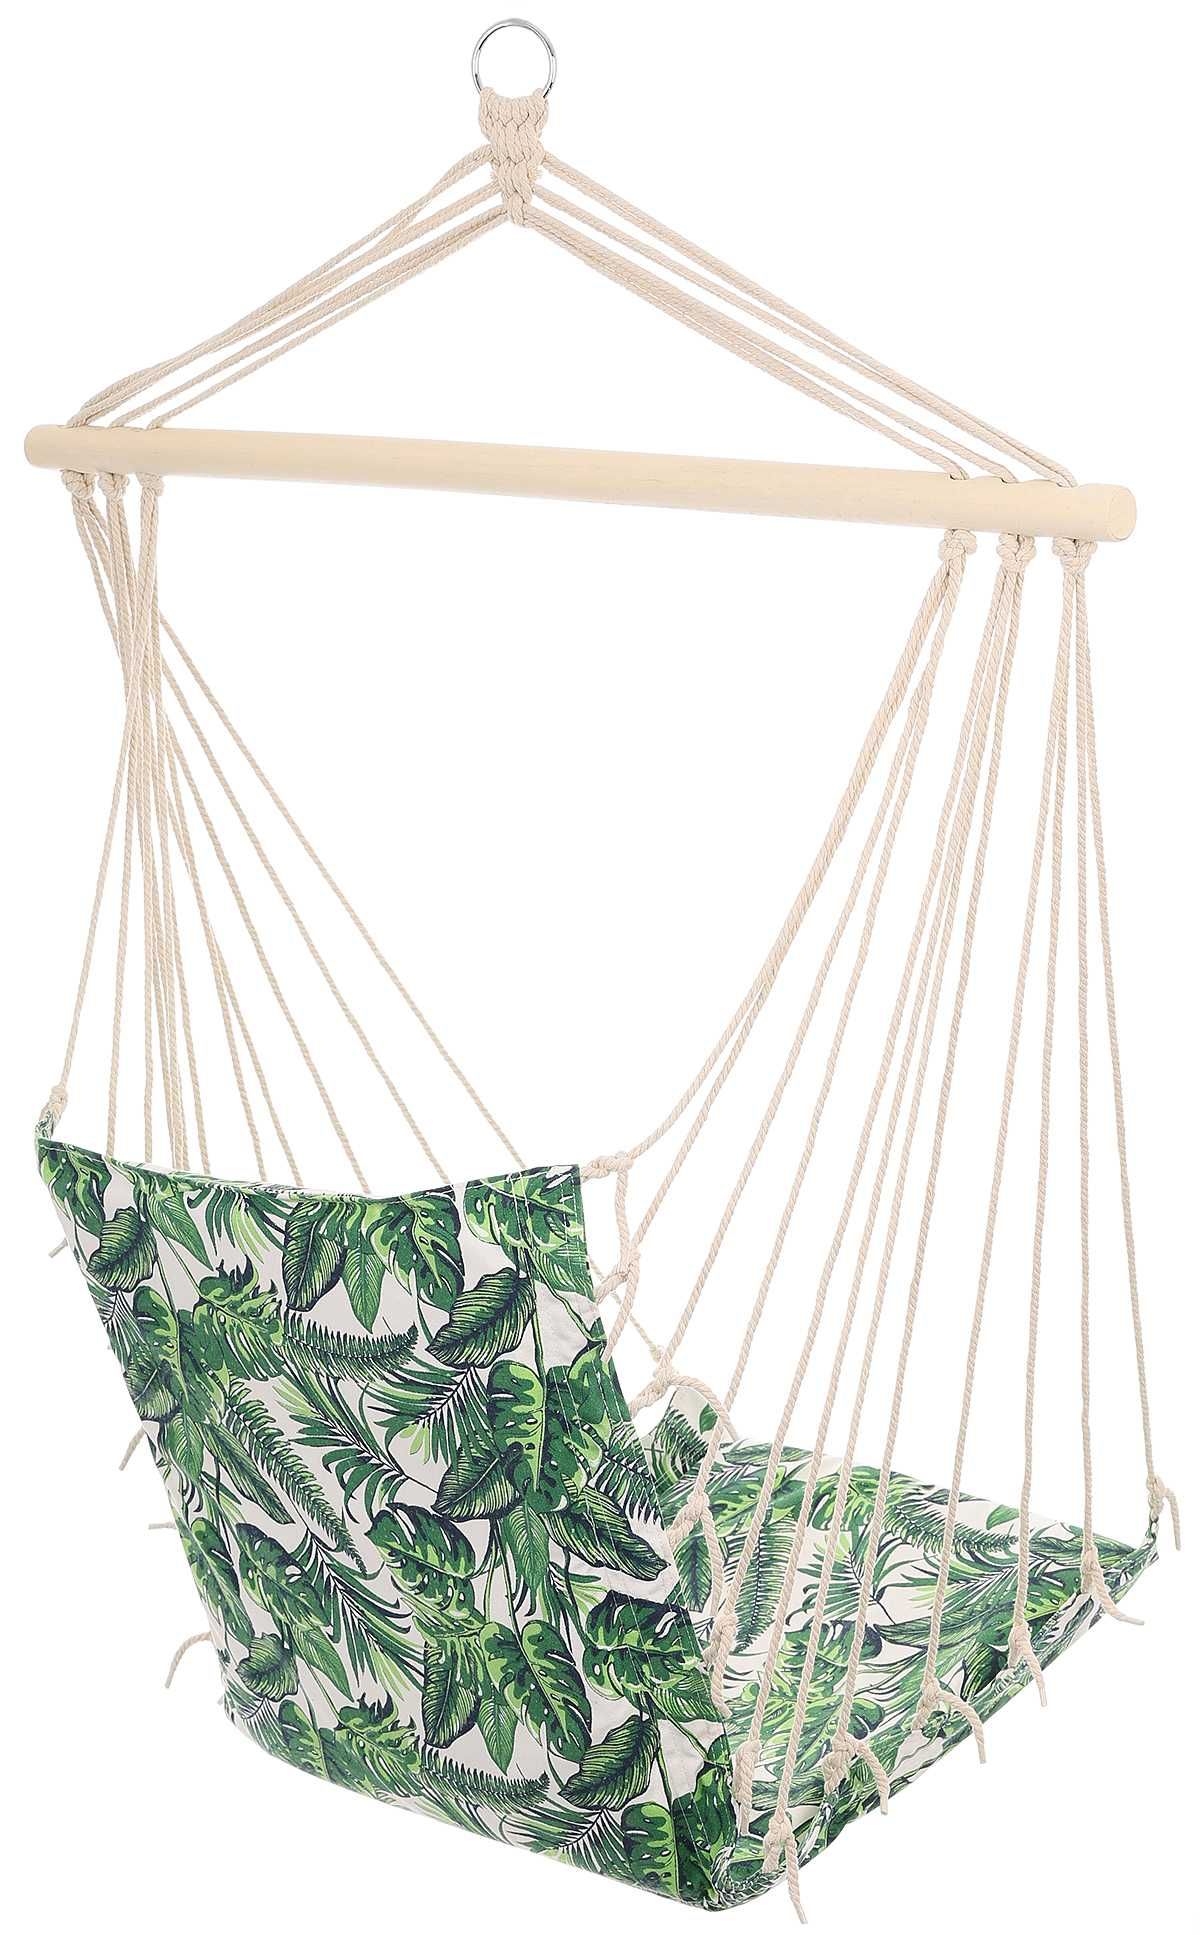 HAMAK FOTEL BRAZYLIJSKI 100X50cm krzesło wiszące zielone liście jungle